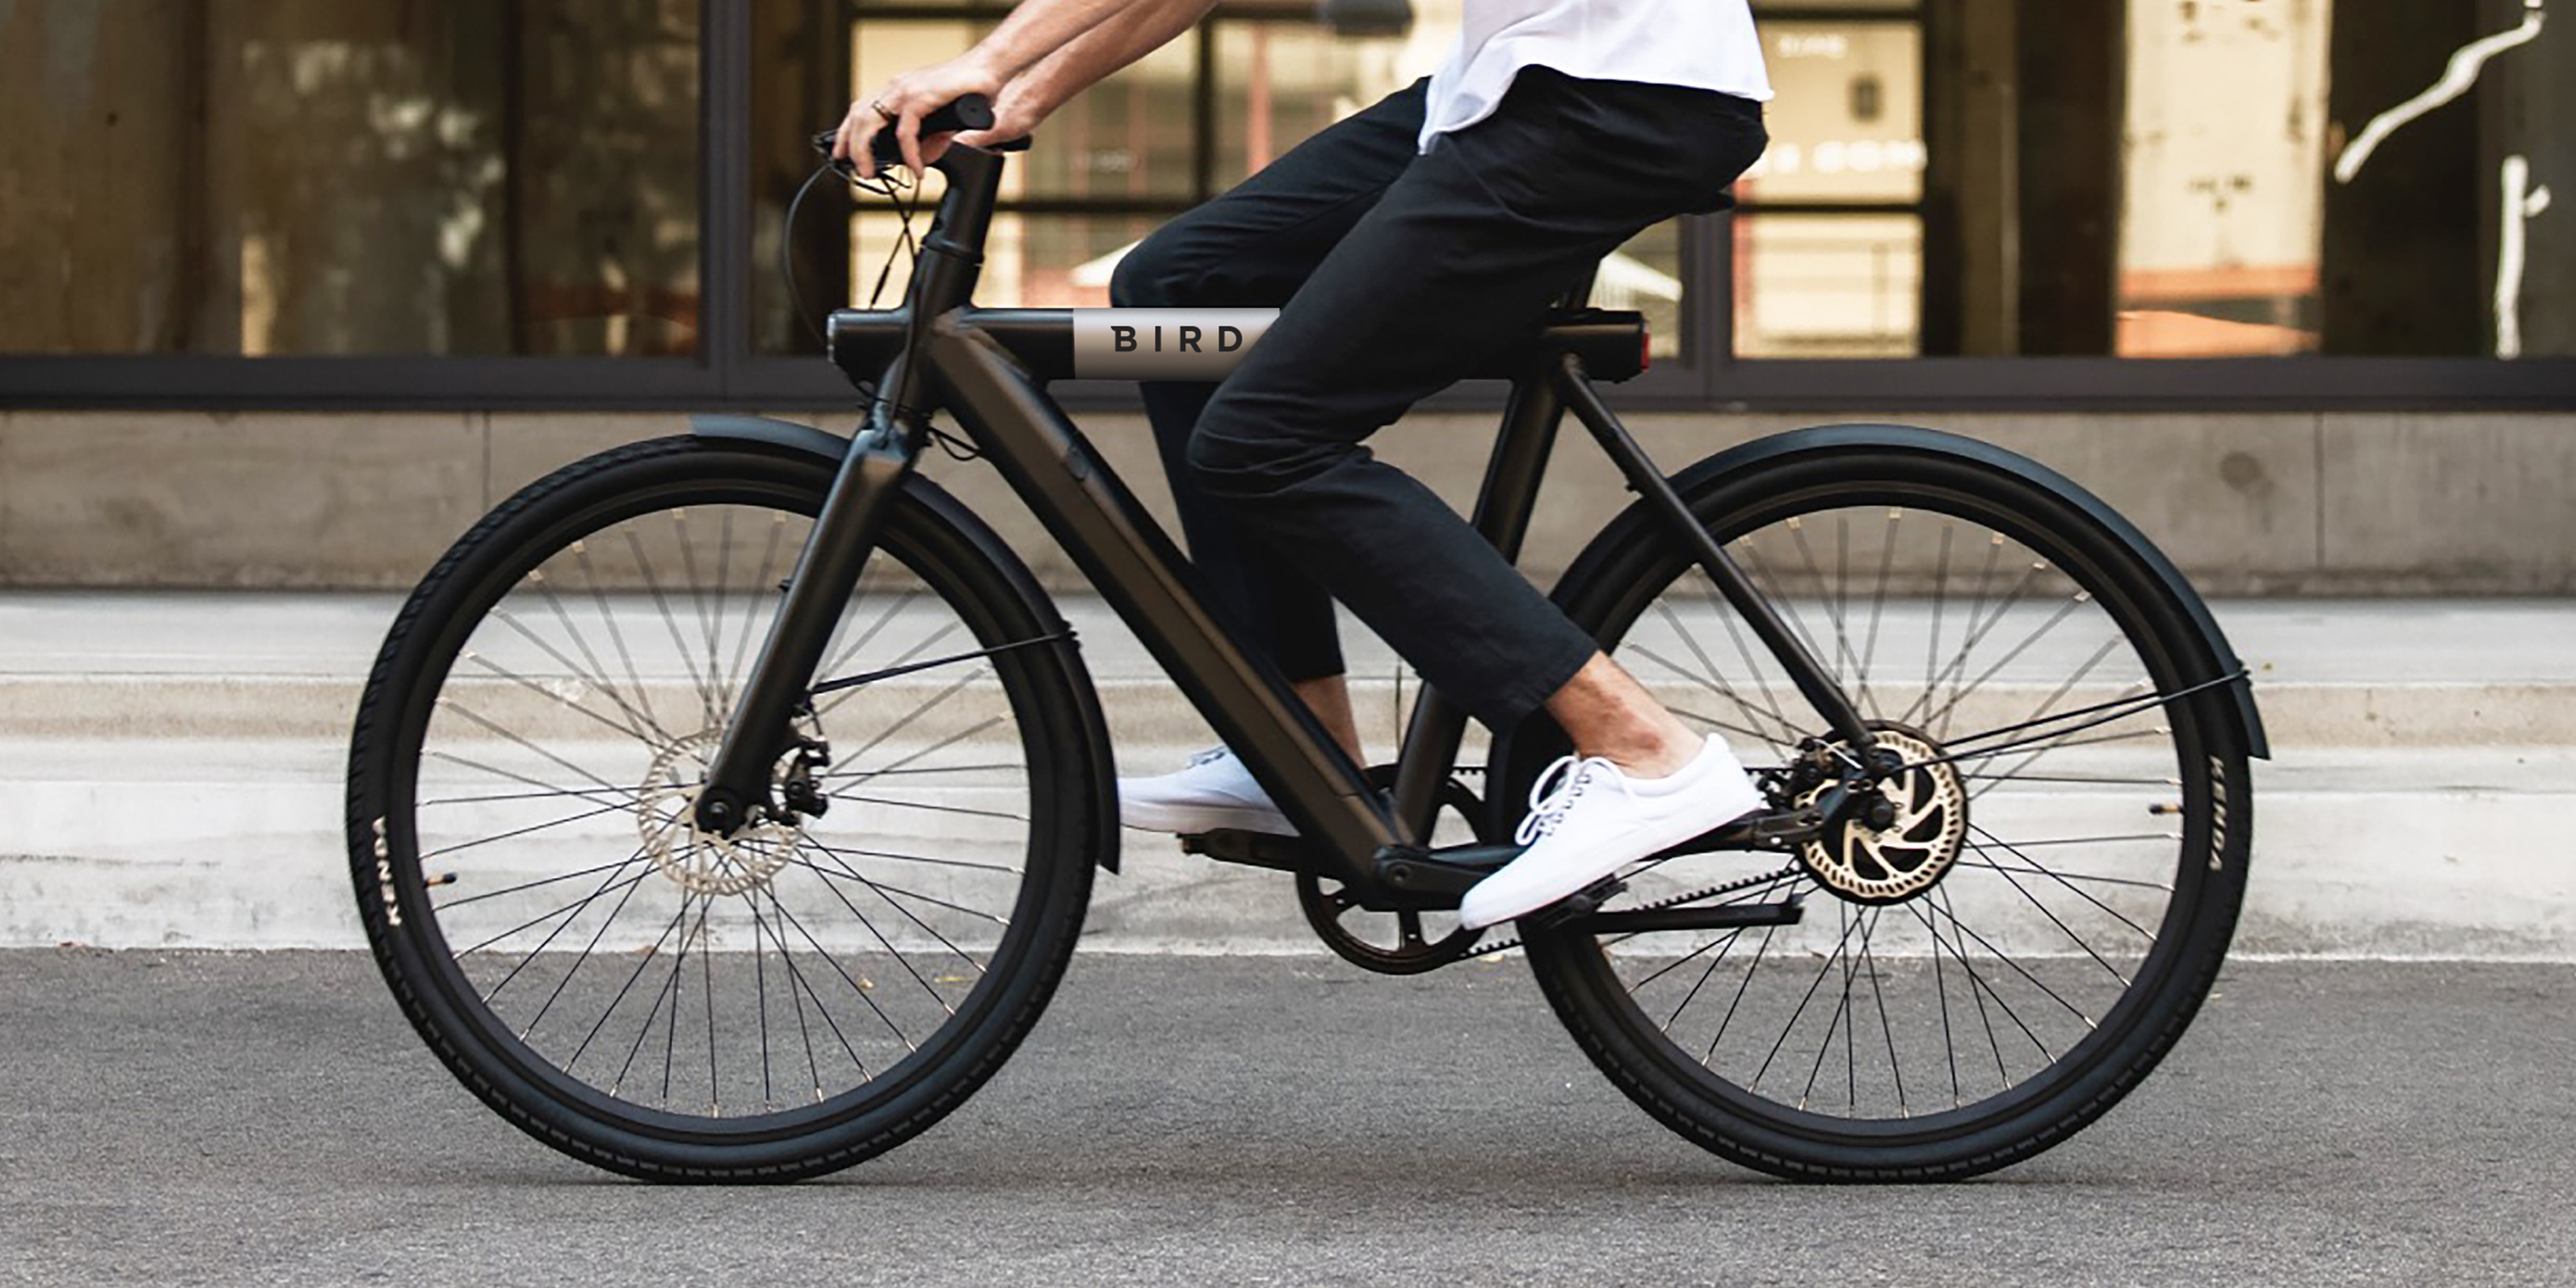 redden Doorbraak Politieagent Bird Bike review: is de e-bike het waard? | Voltes - Electric Mobility